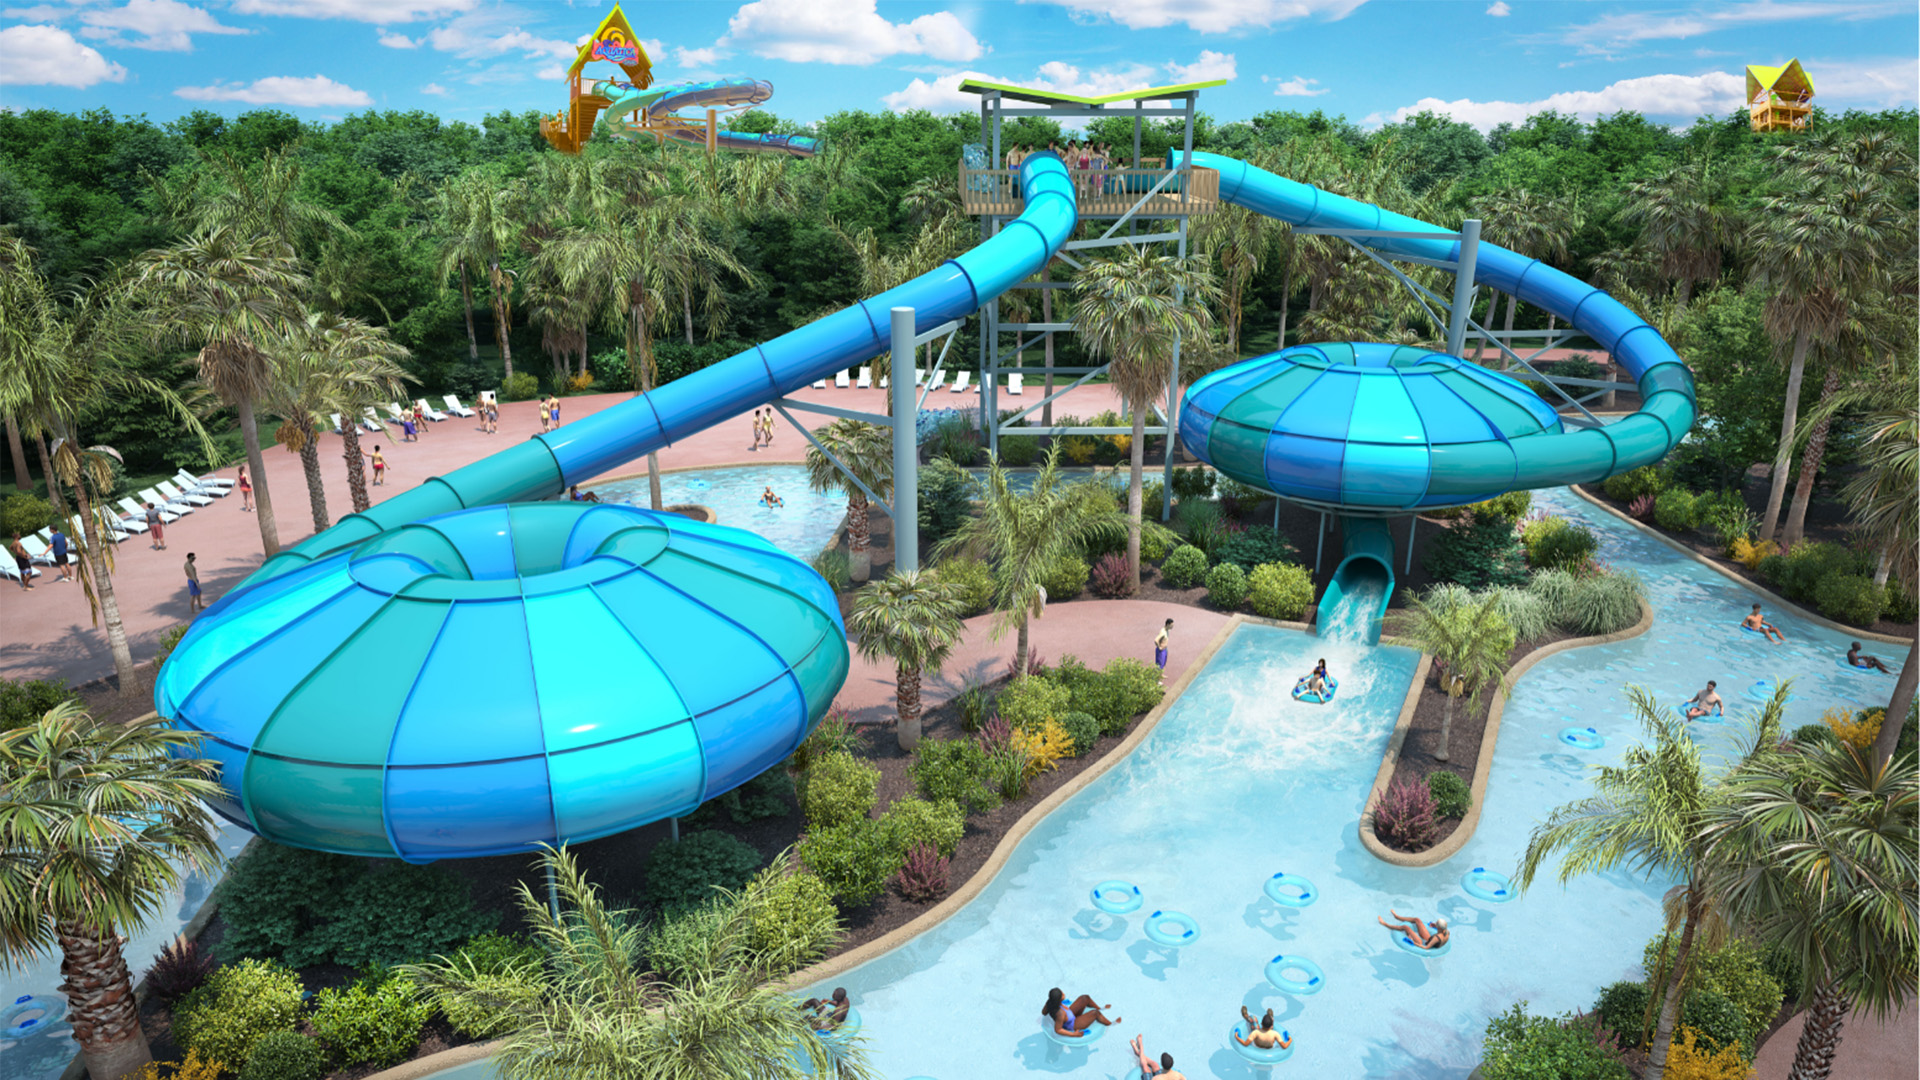 Aquatica Orlando to open 'immersive water slide' in 2024